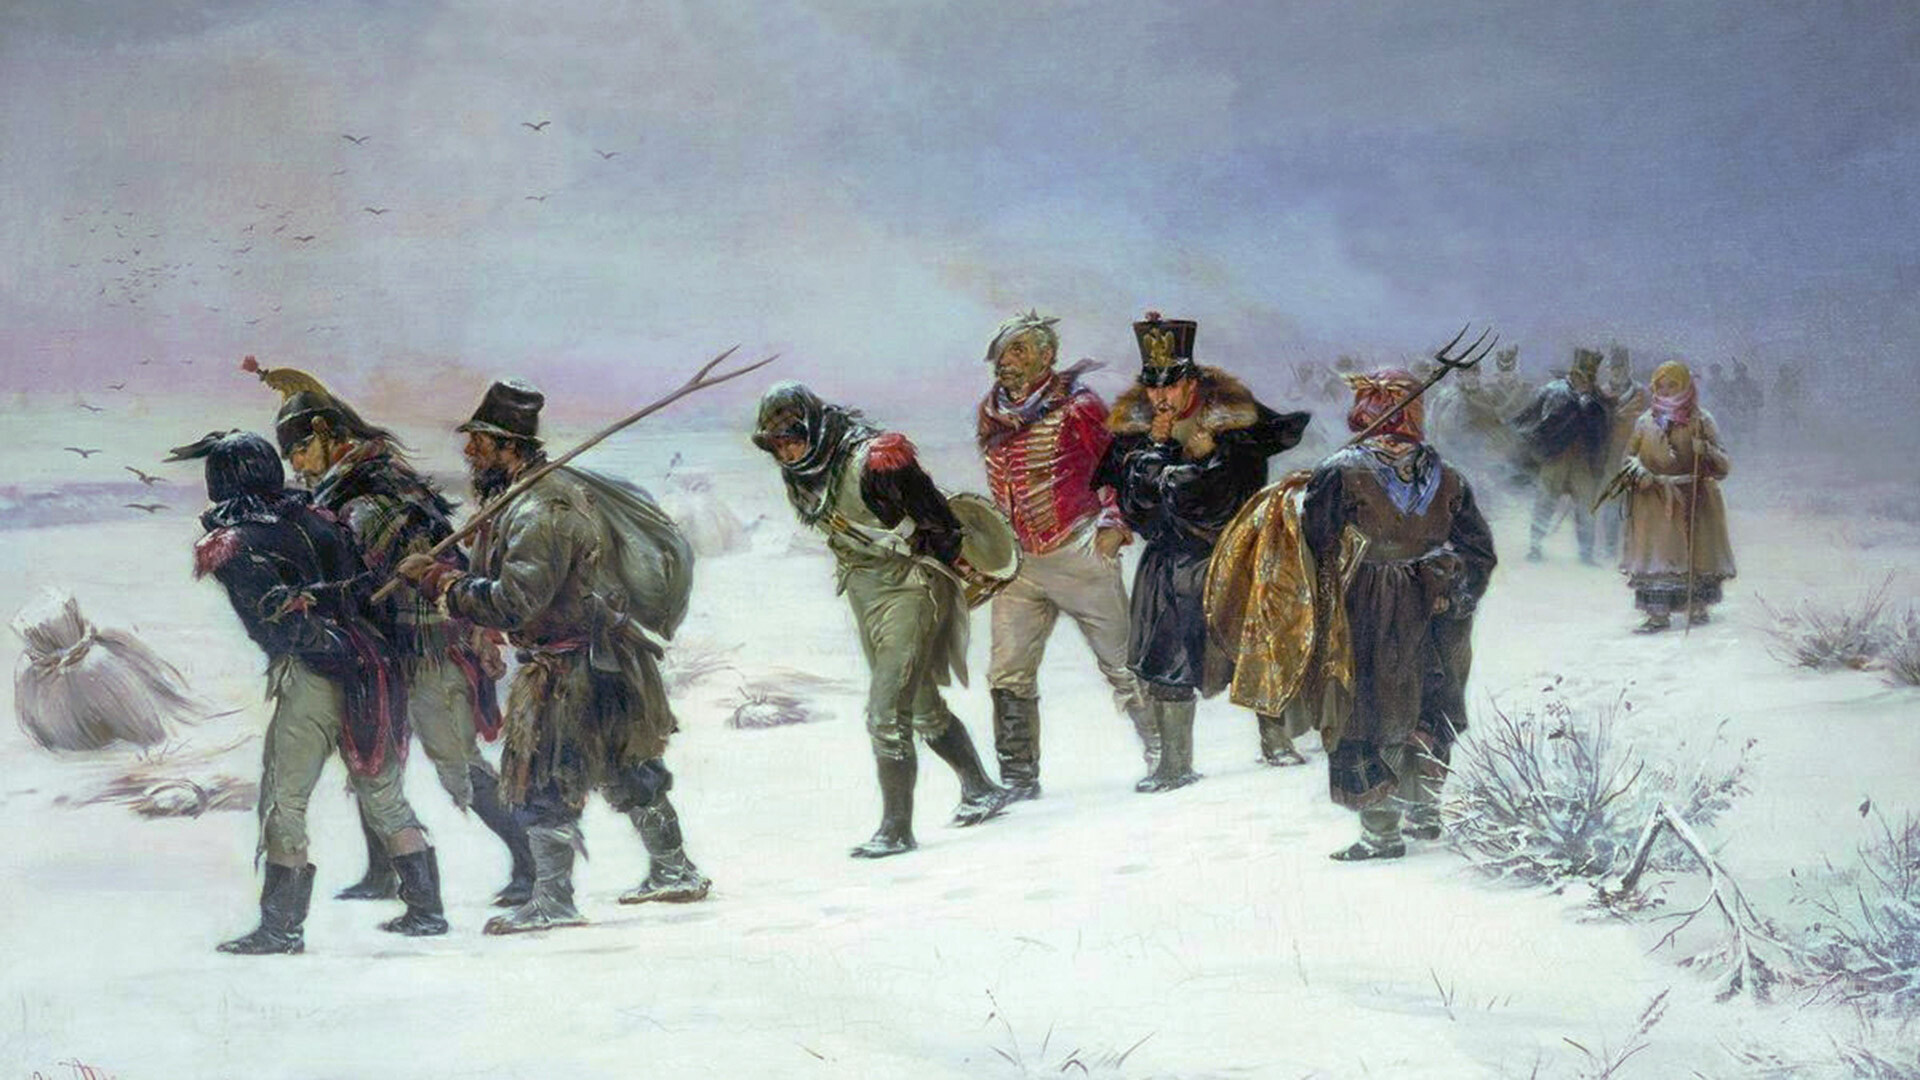 La ritirata francese dalla Russia nel 1812
